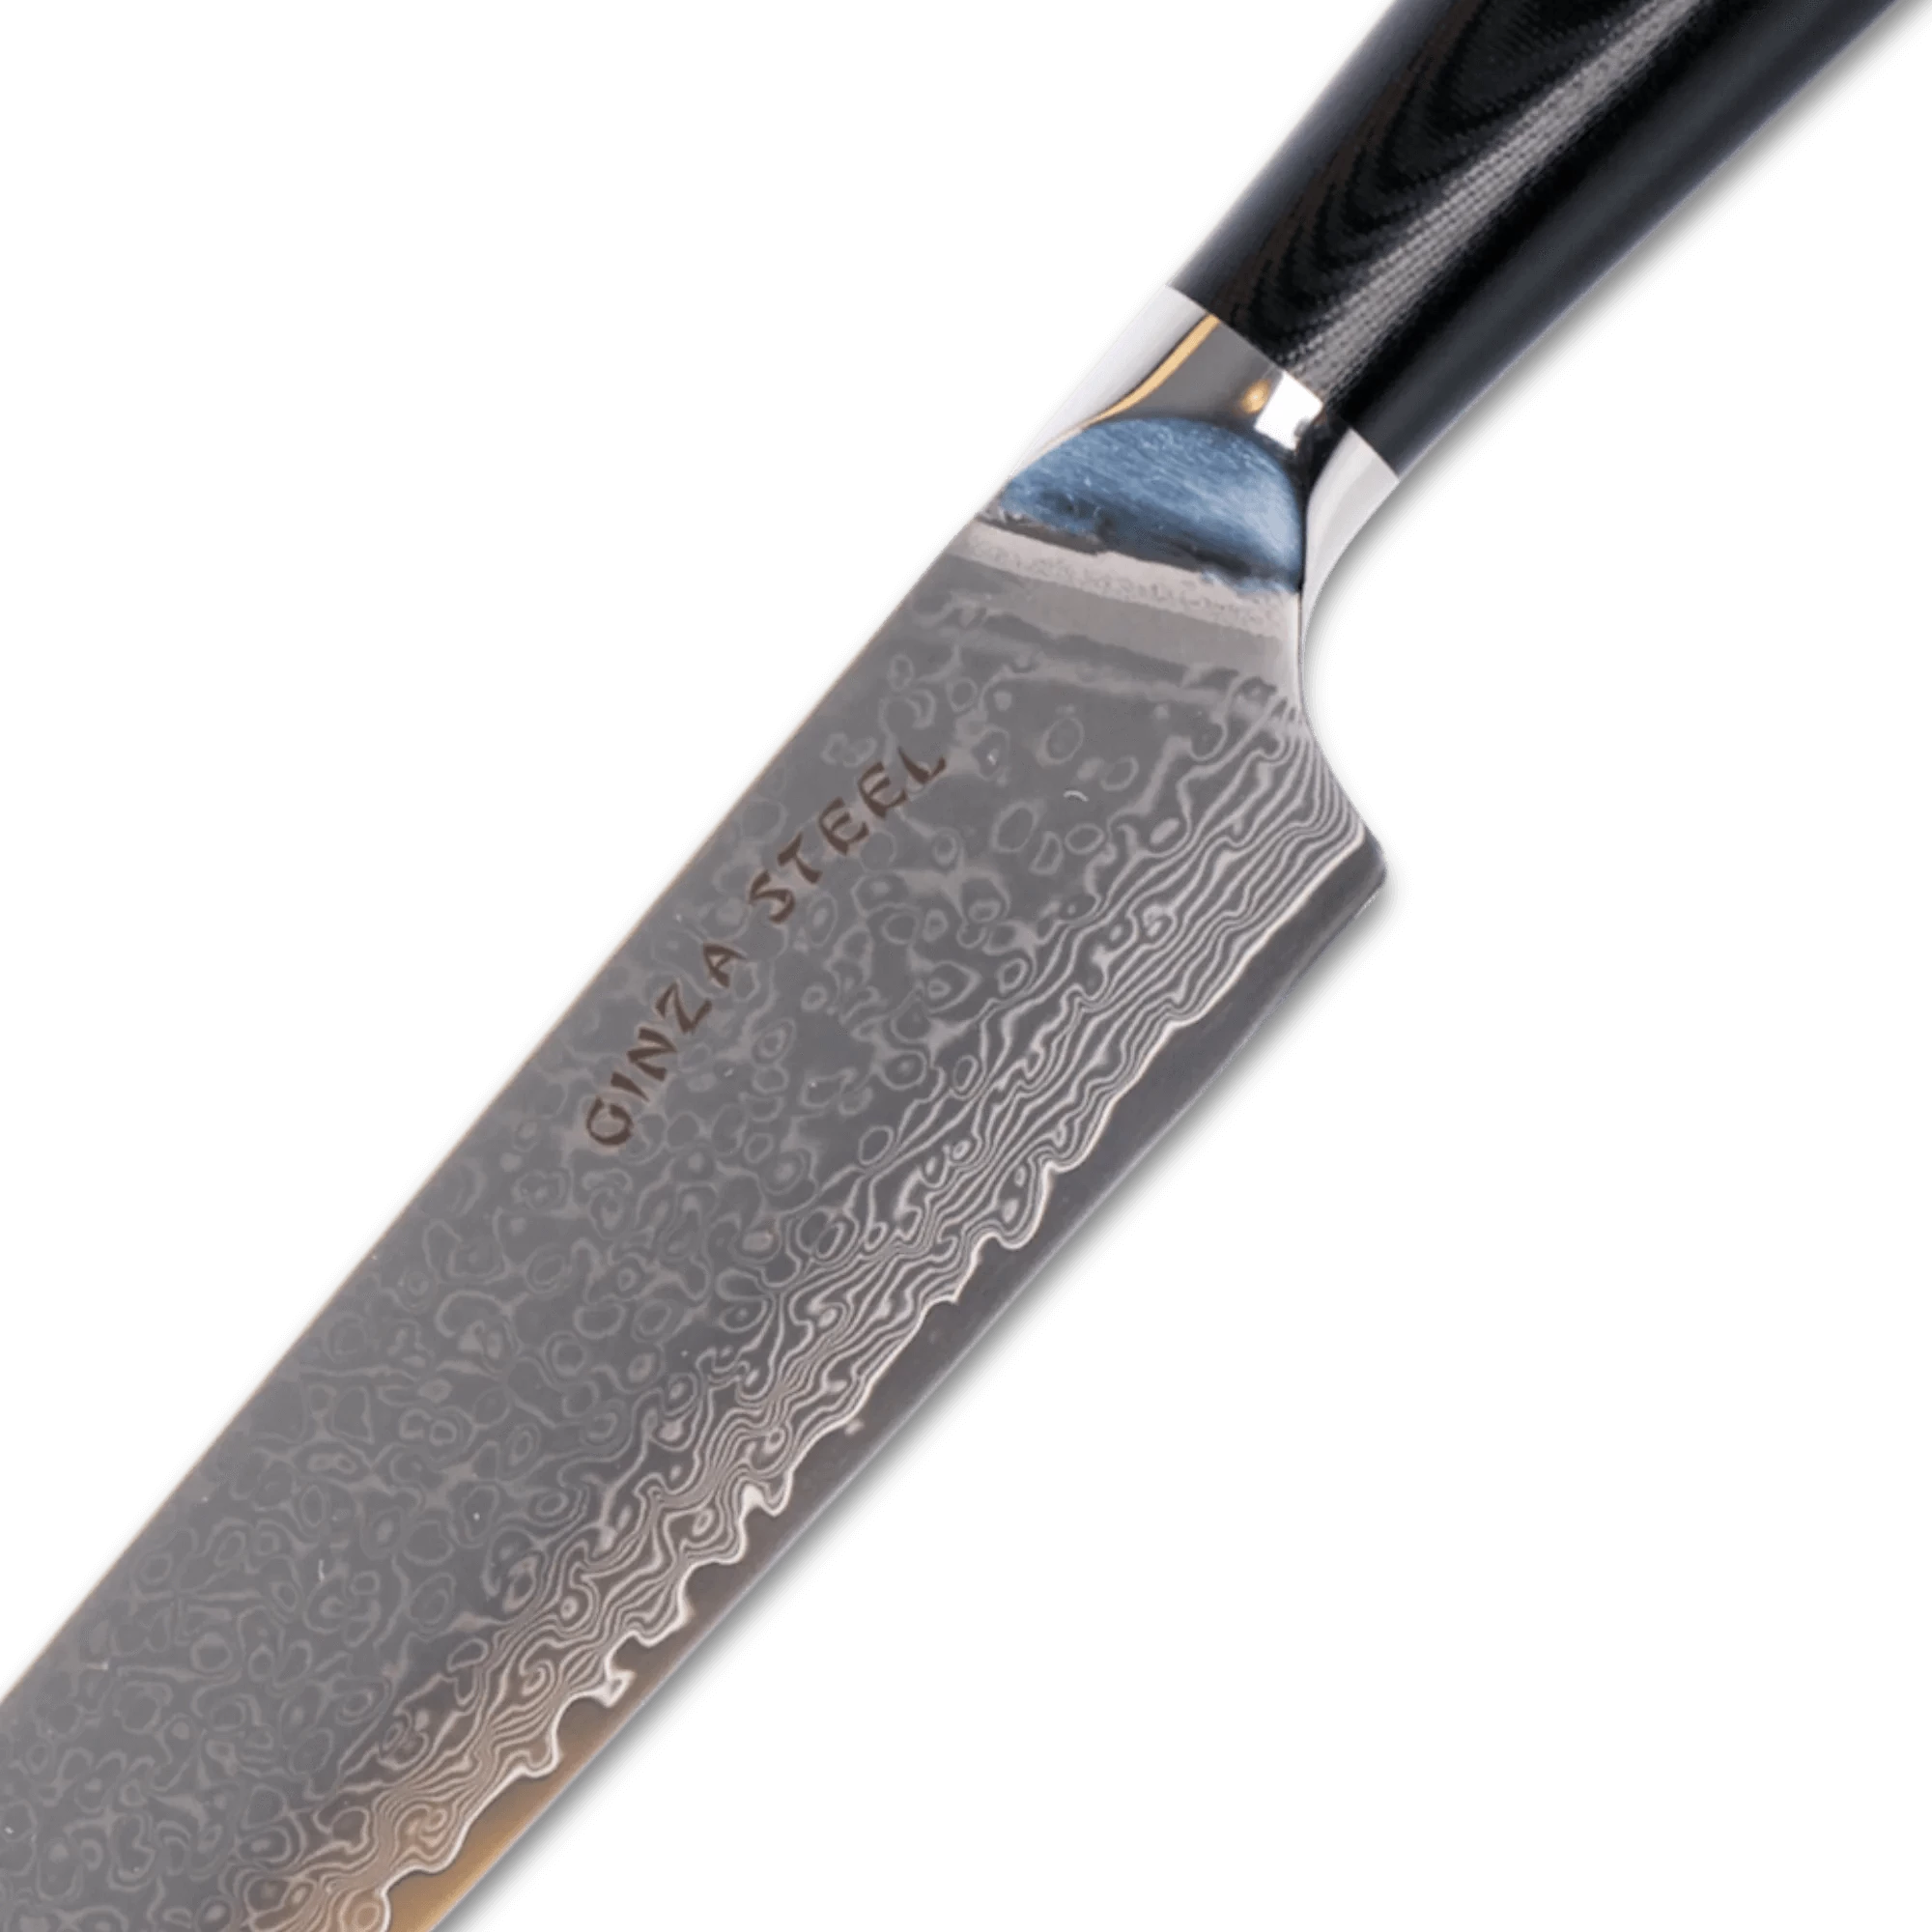 HAGAKURE 20 | Couteau de Santoku japonais 8" - 67 Layer VG10 Steel